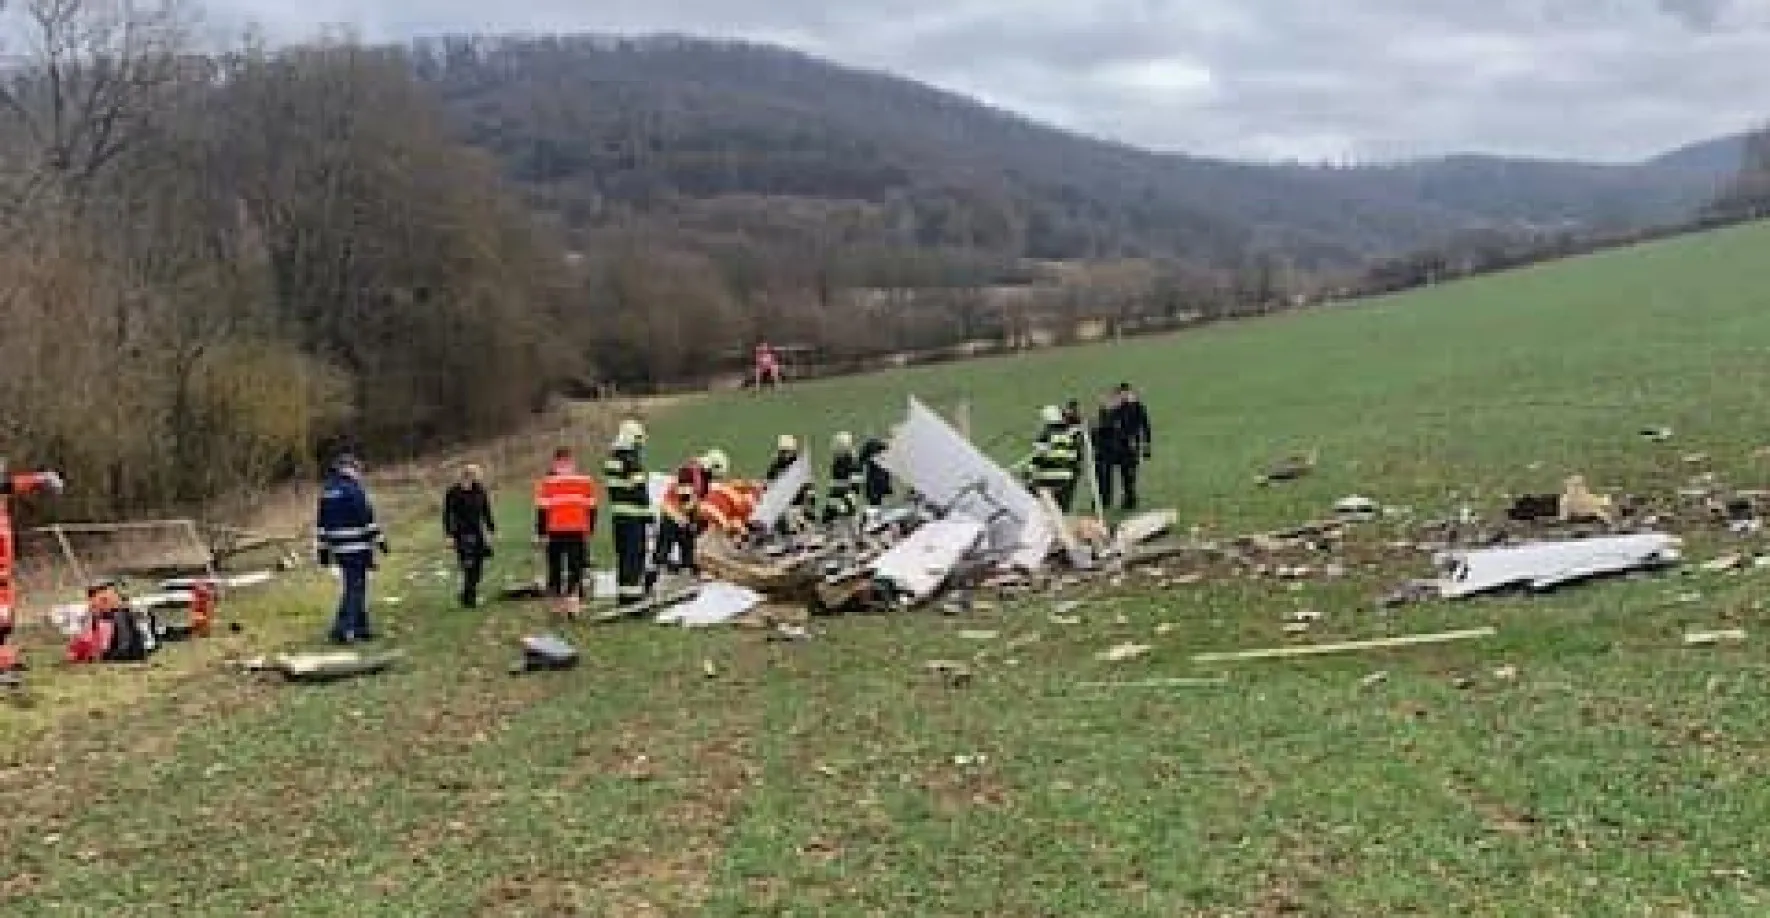 Na Slovensku havarovalo malé letadlo, čtyři pasažéři nehodu nepřežili. Stroj byl registrován v Česku